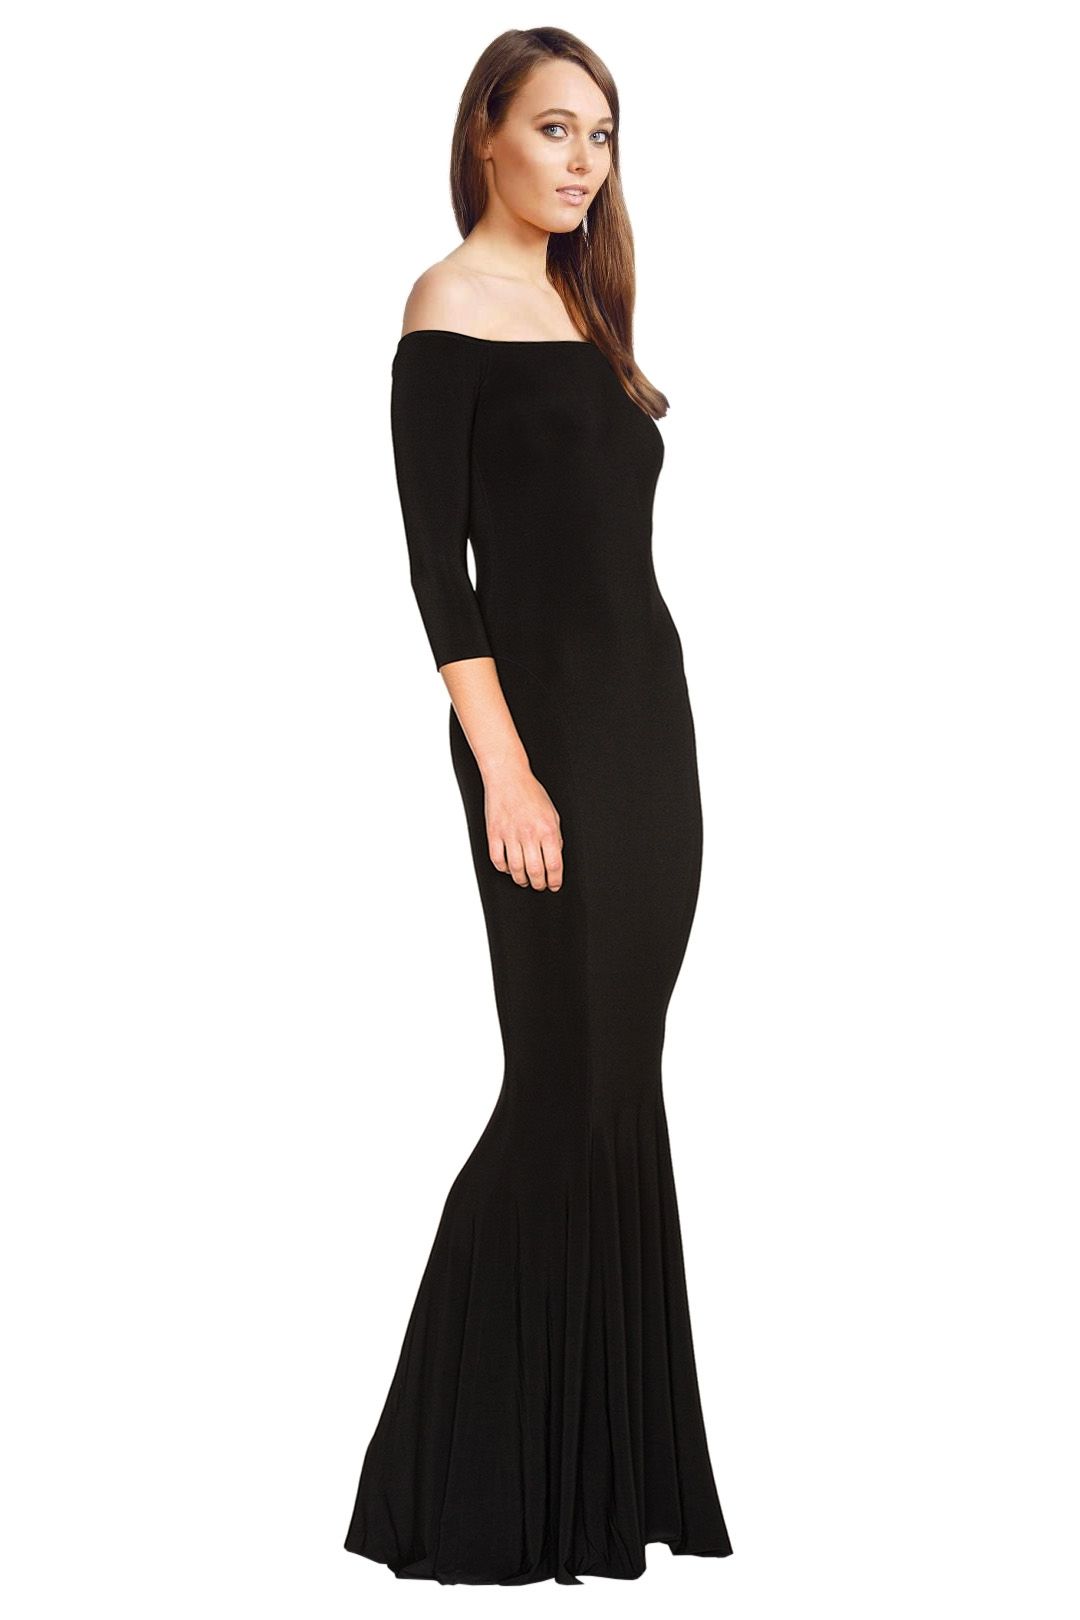 Norma Kamali - Off Shoulder Fishtail Gown - Black - Side